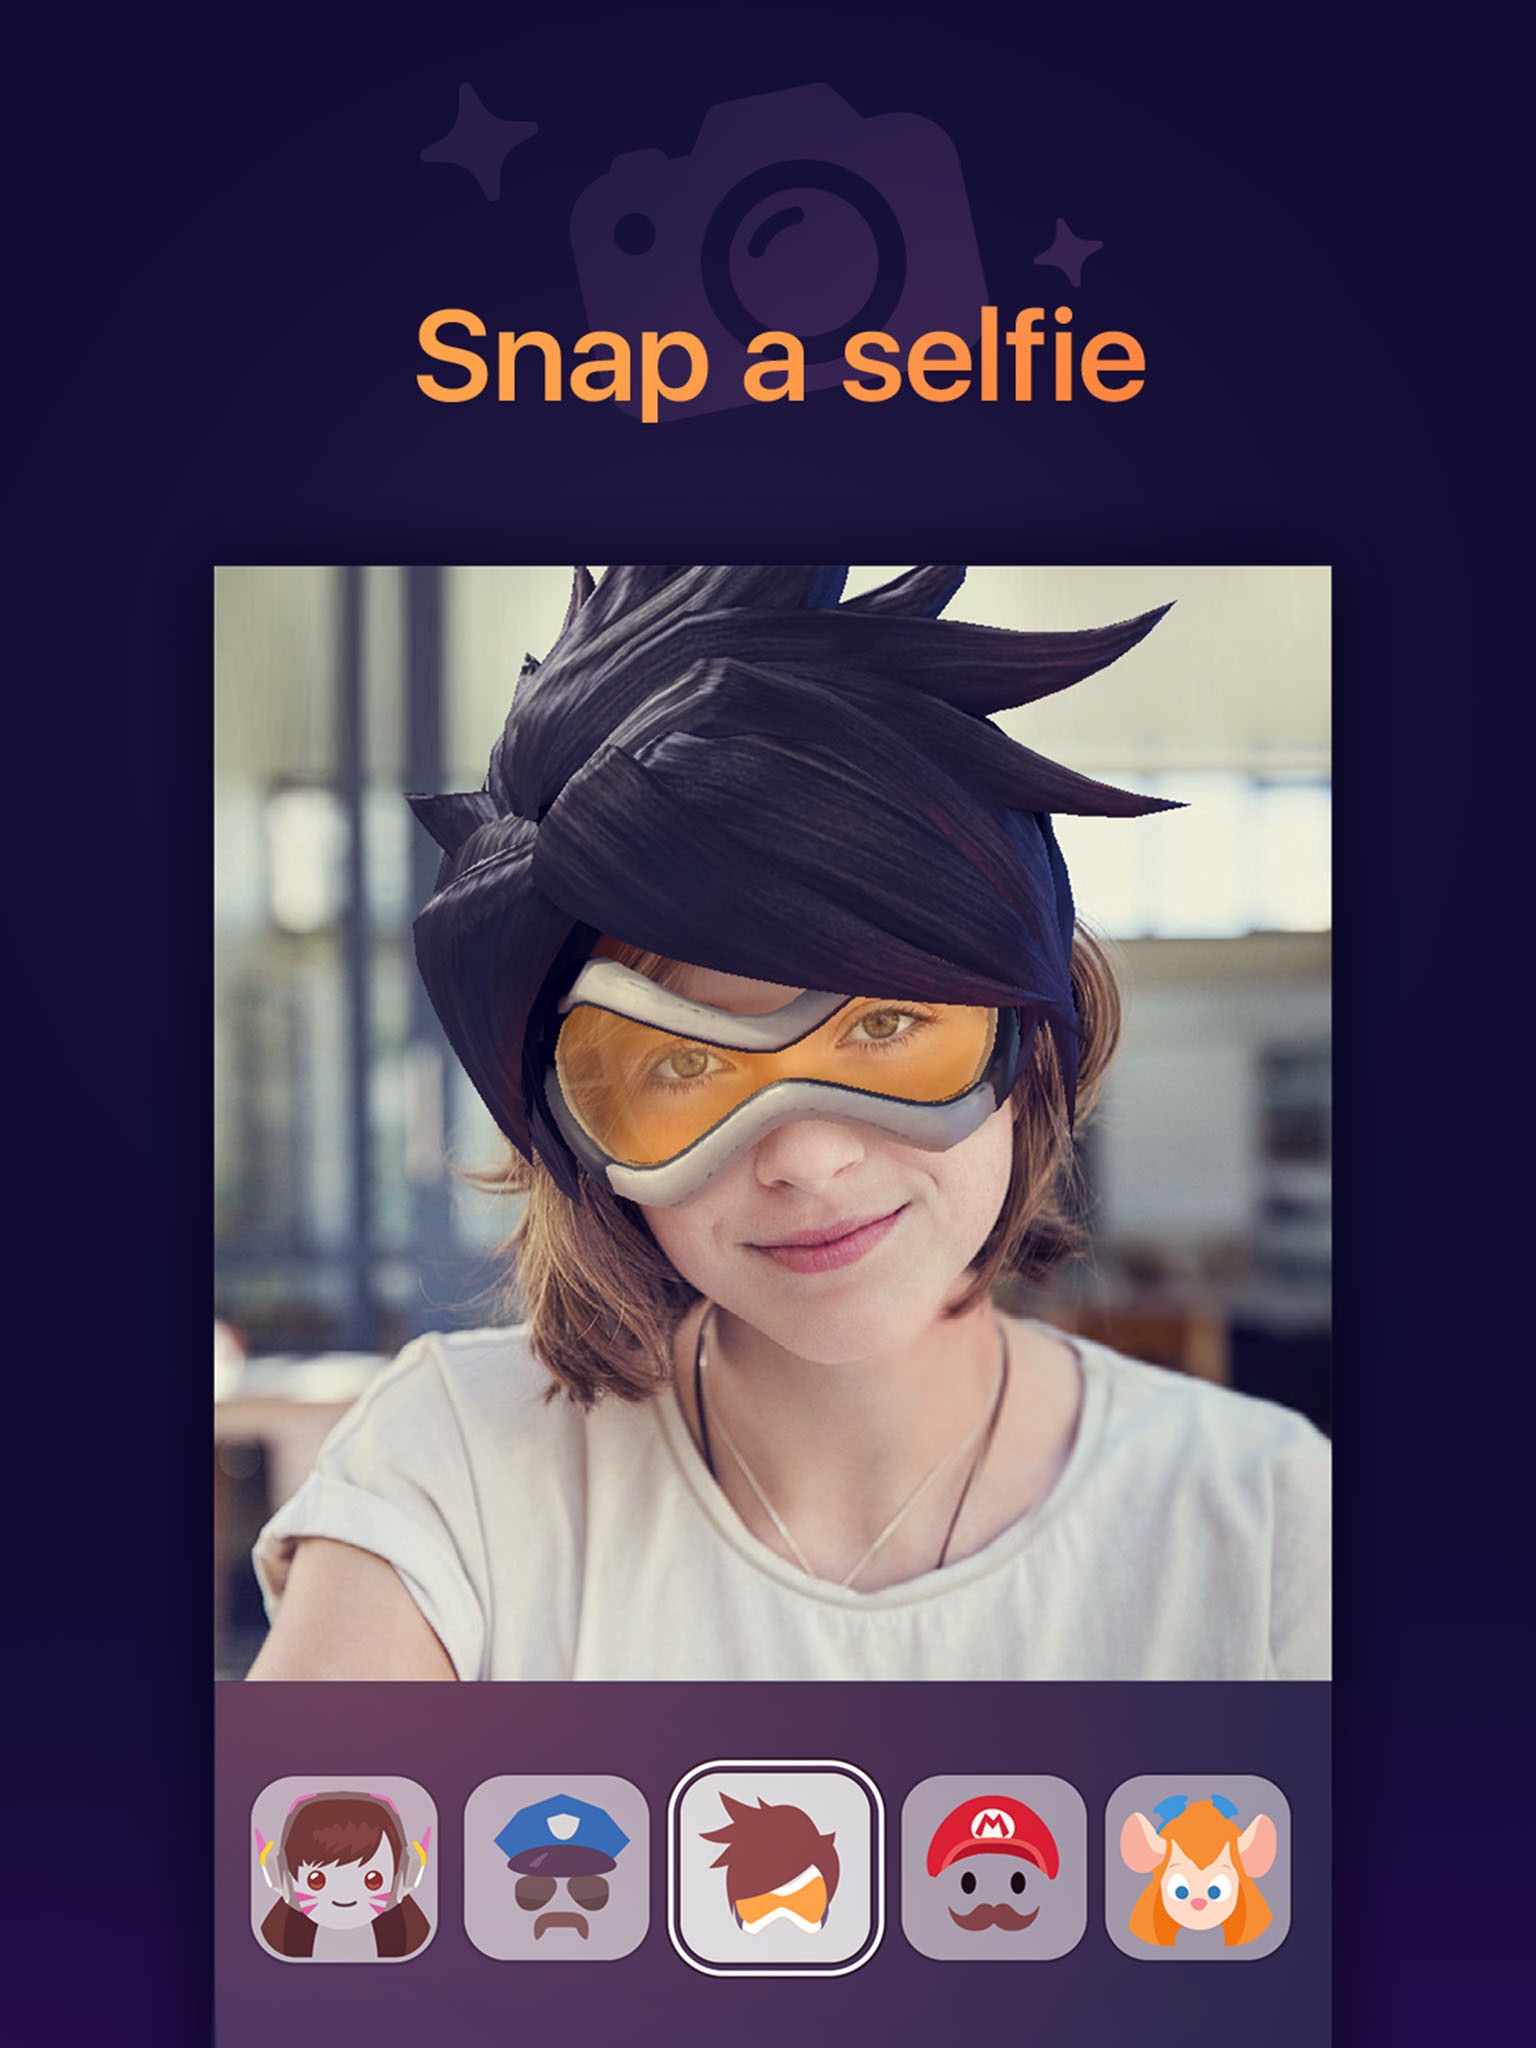 SayMask - Funny Live Video Filters for Selfie screenshot 2